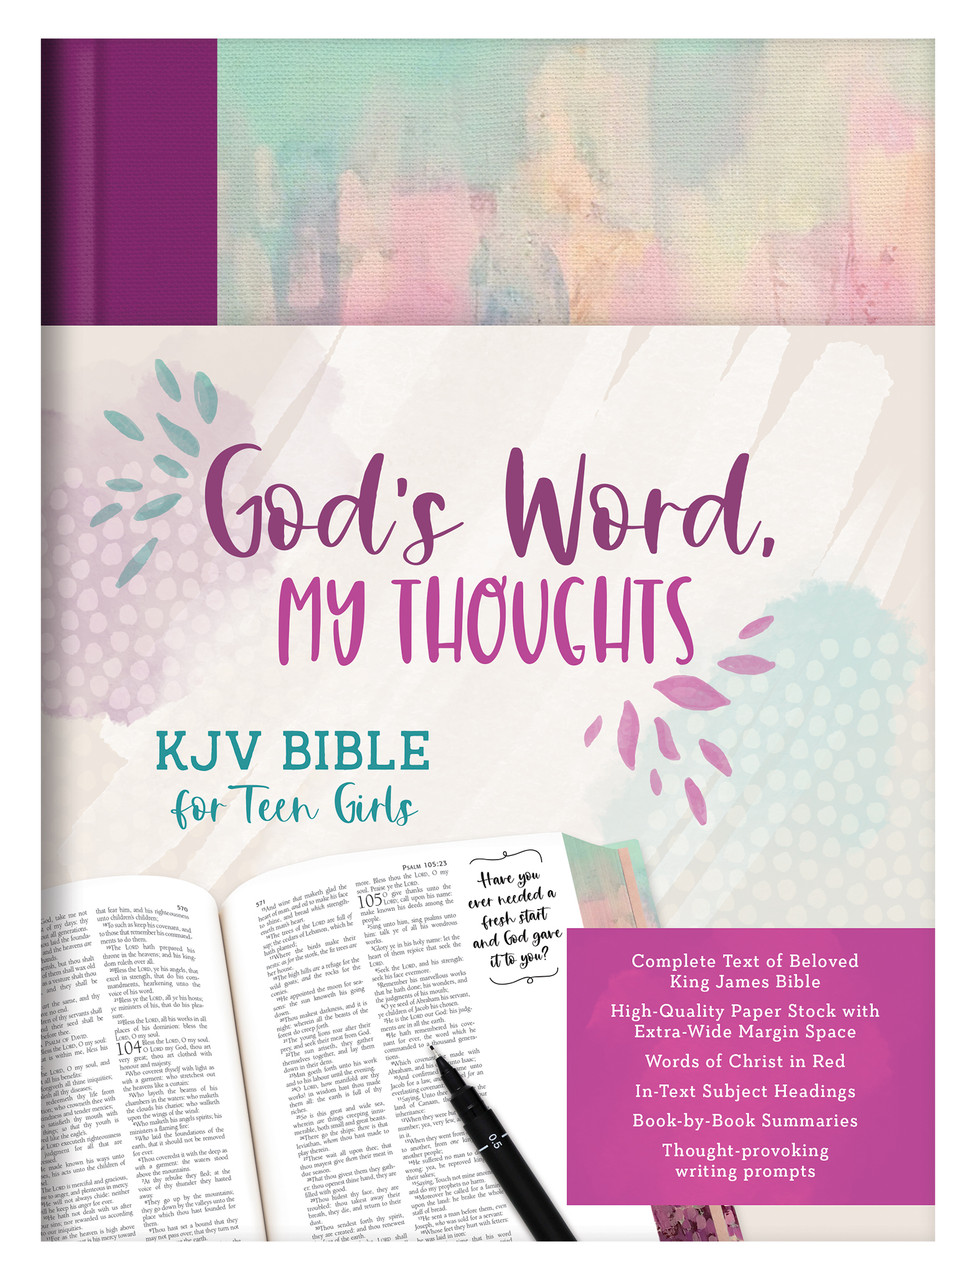 You're God's Girl! Prayer Journal - For Girls Like You